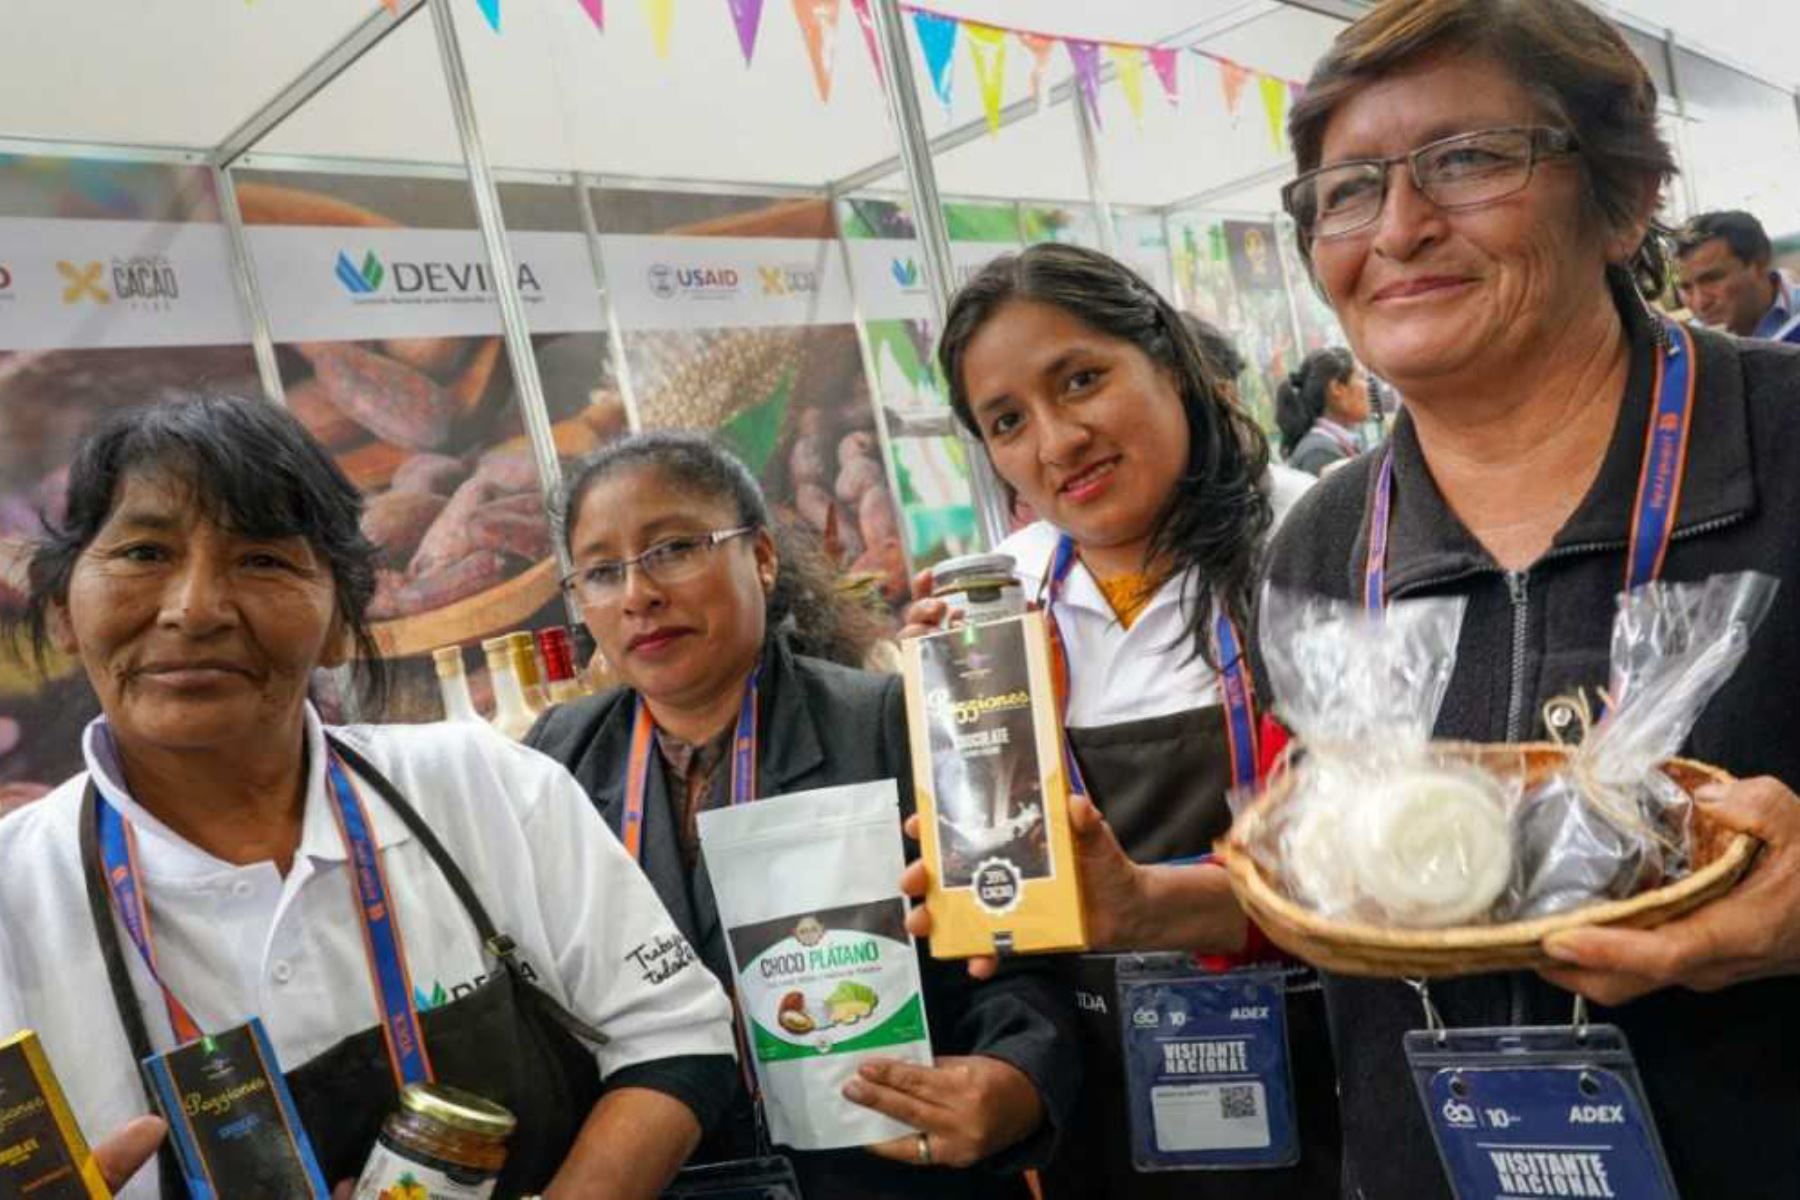 Un total de 30 organizaciones de café y cacao procedentes de zonas cocaleras exhiben hasta hoy sus trabajos en un pabellón especial de la feria Expoalimentaria 2018, con el objetivo de promocionar los dos productos emblemáticos del desarrollo alternativo.